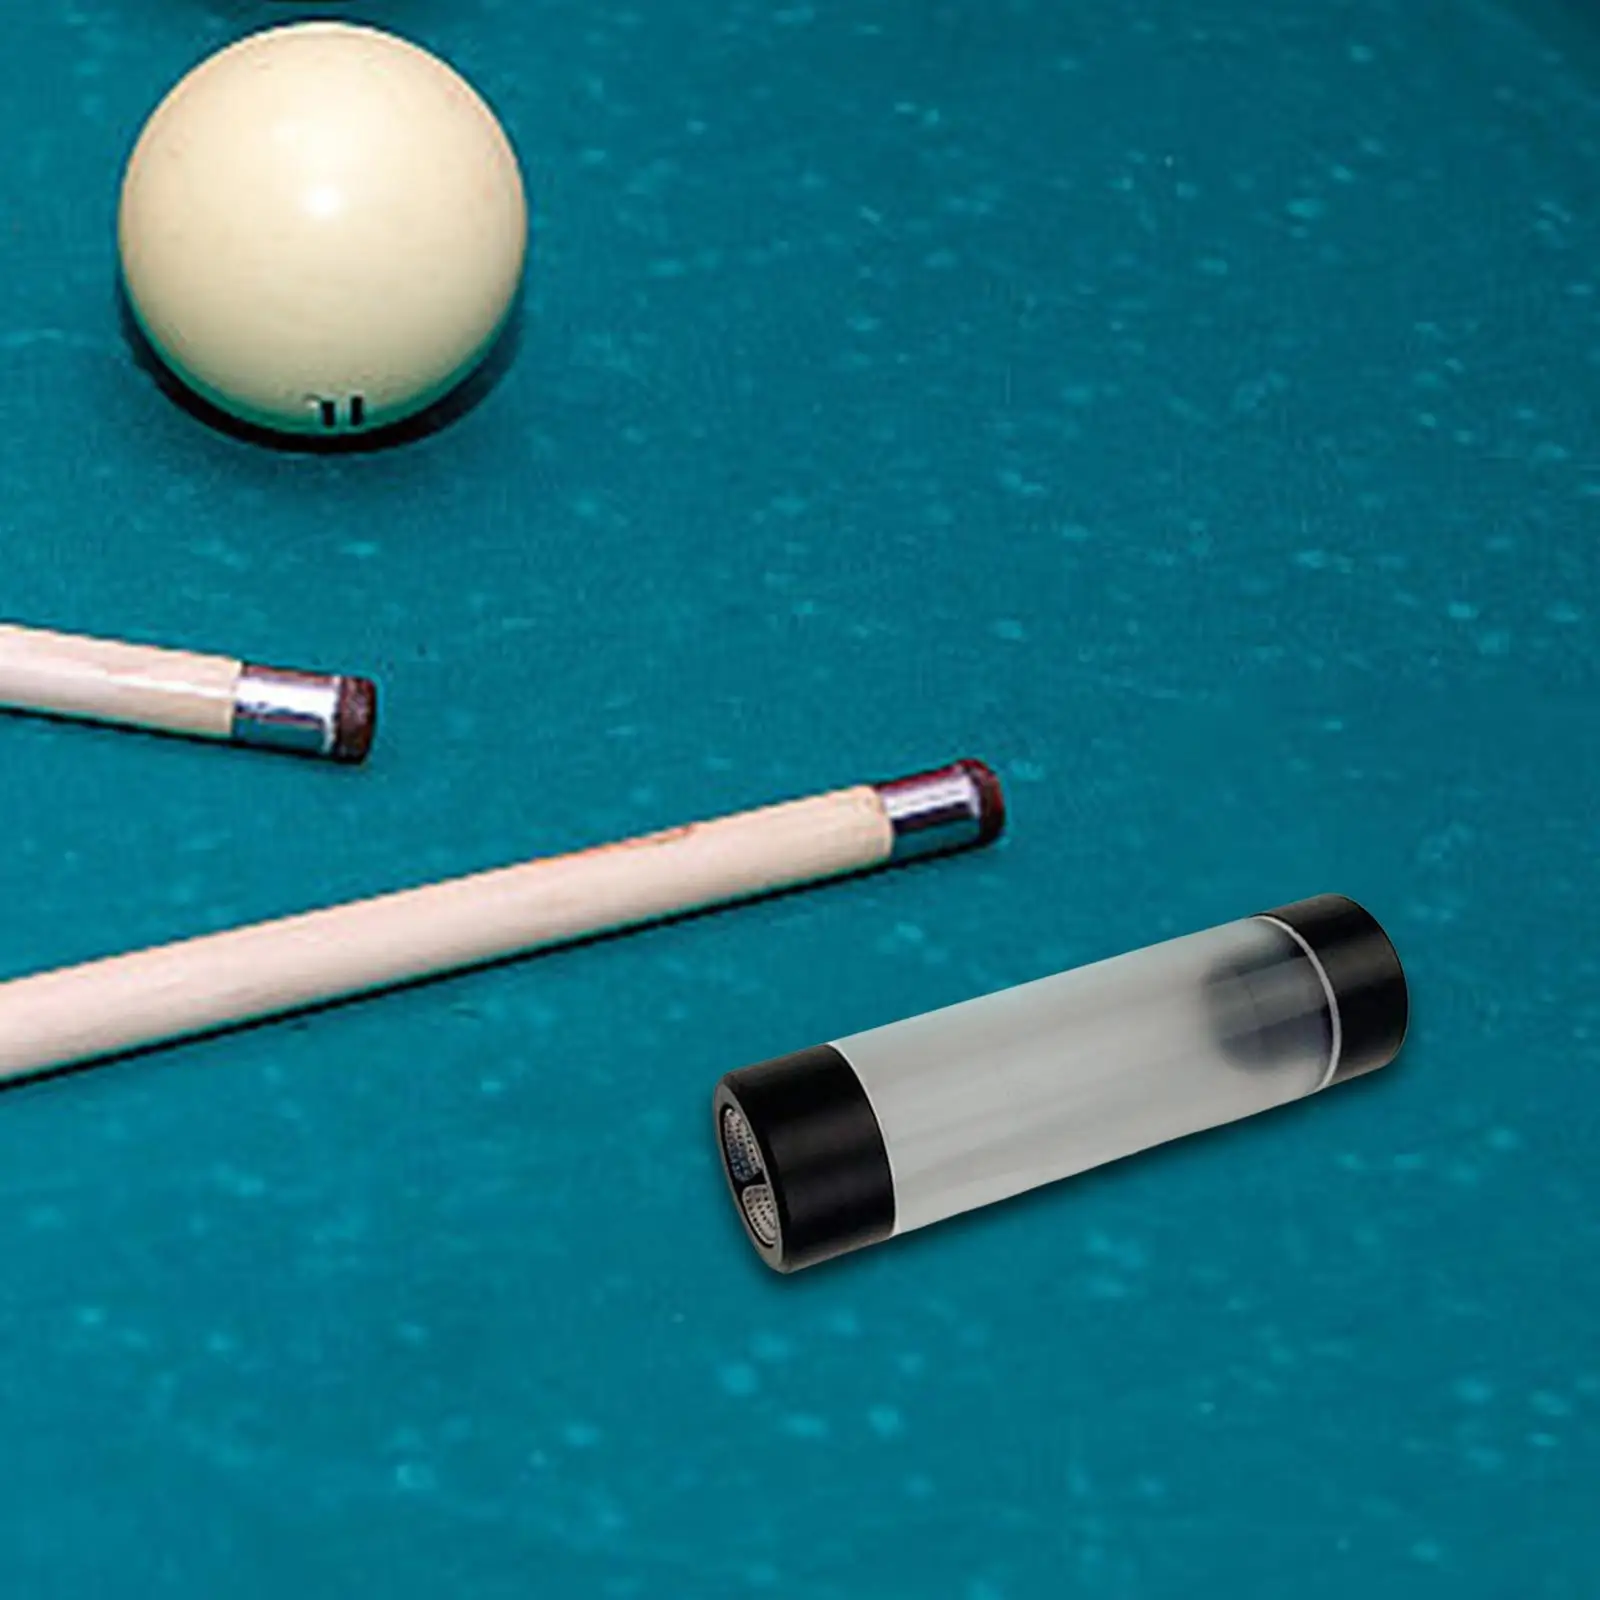 Billiard Pool Cue Tip Tool Pricker Portable Snooker Pool Cue Tip Shaper